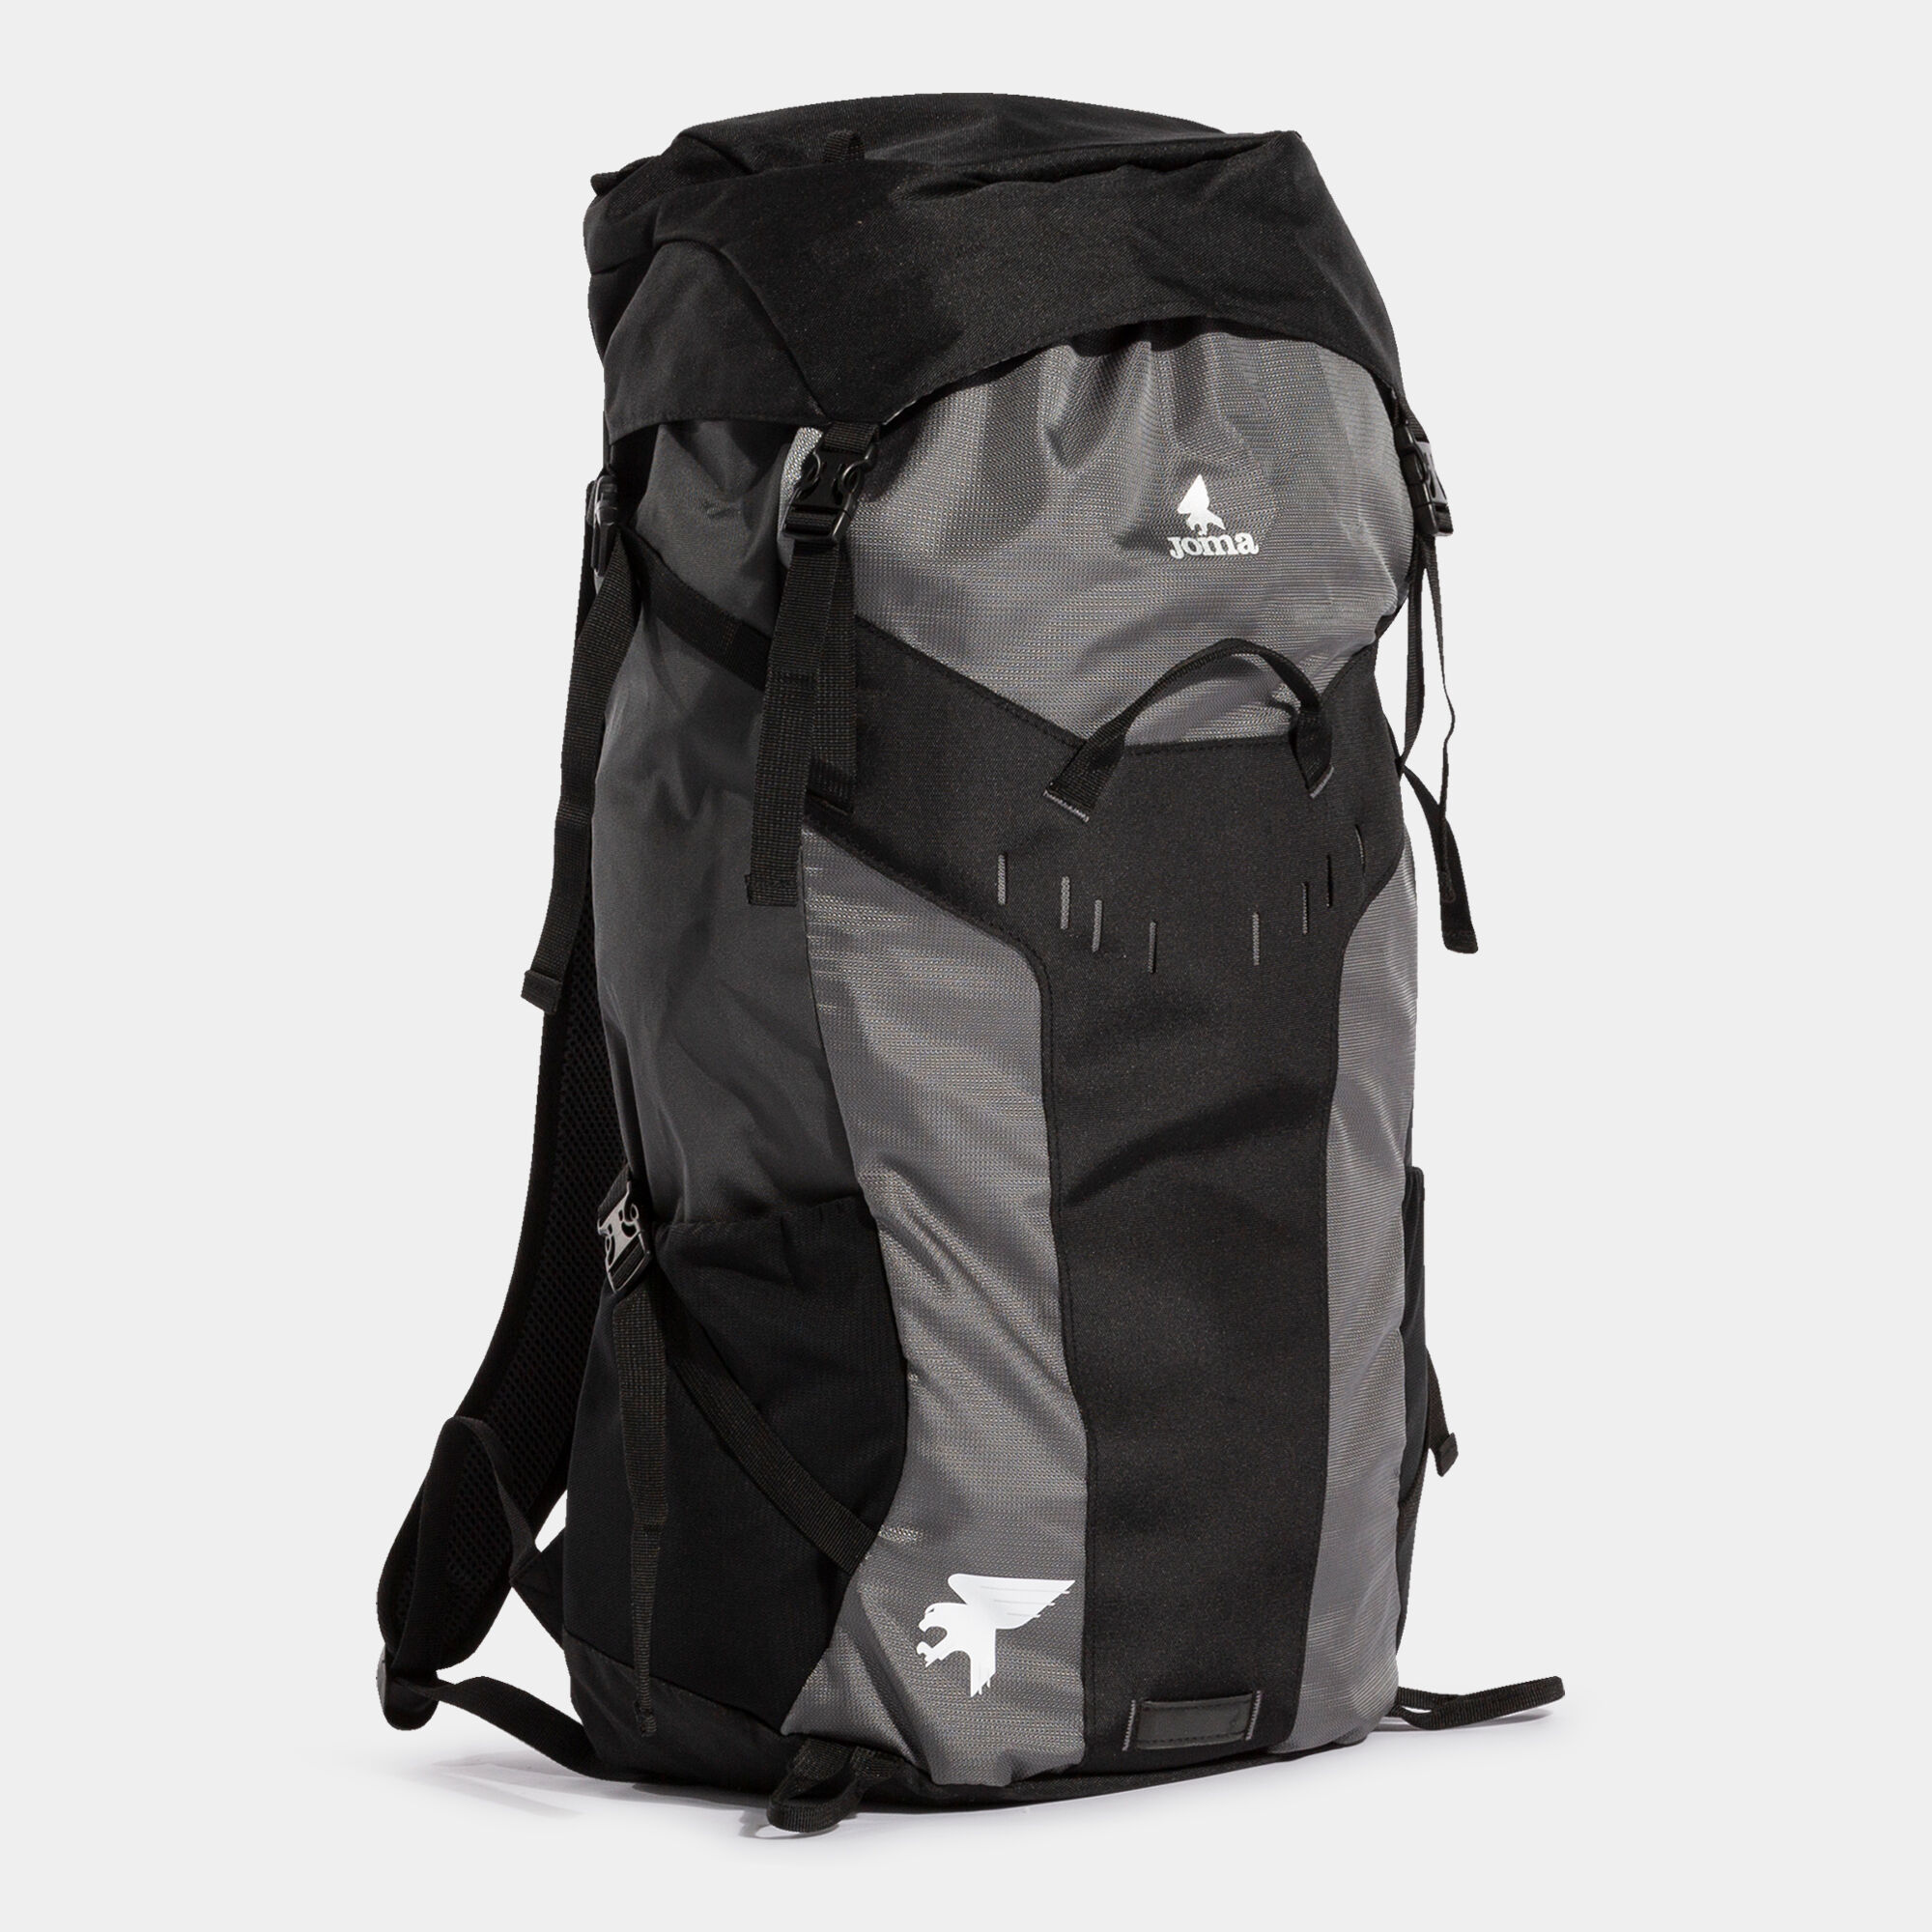 Rucsac-geantă pentru încălțăminte Explorer negru antracit